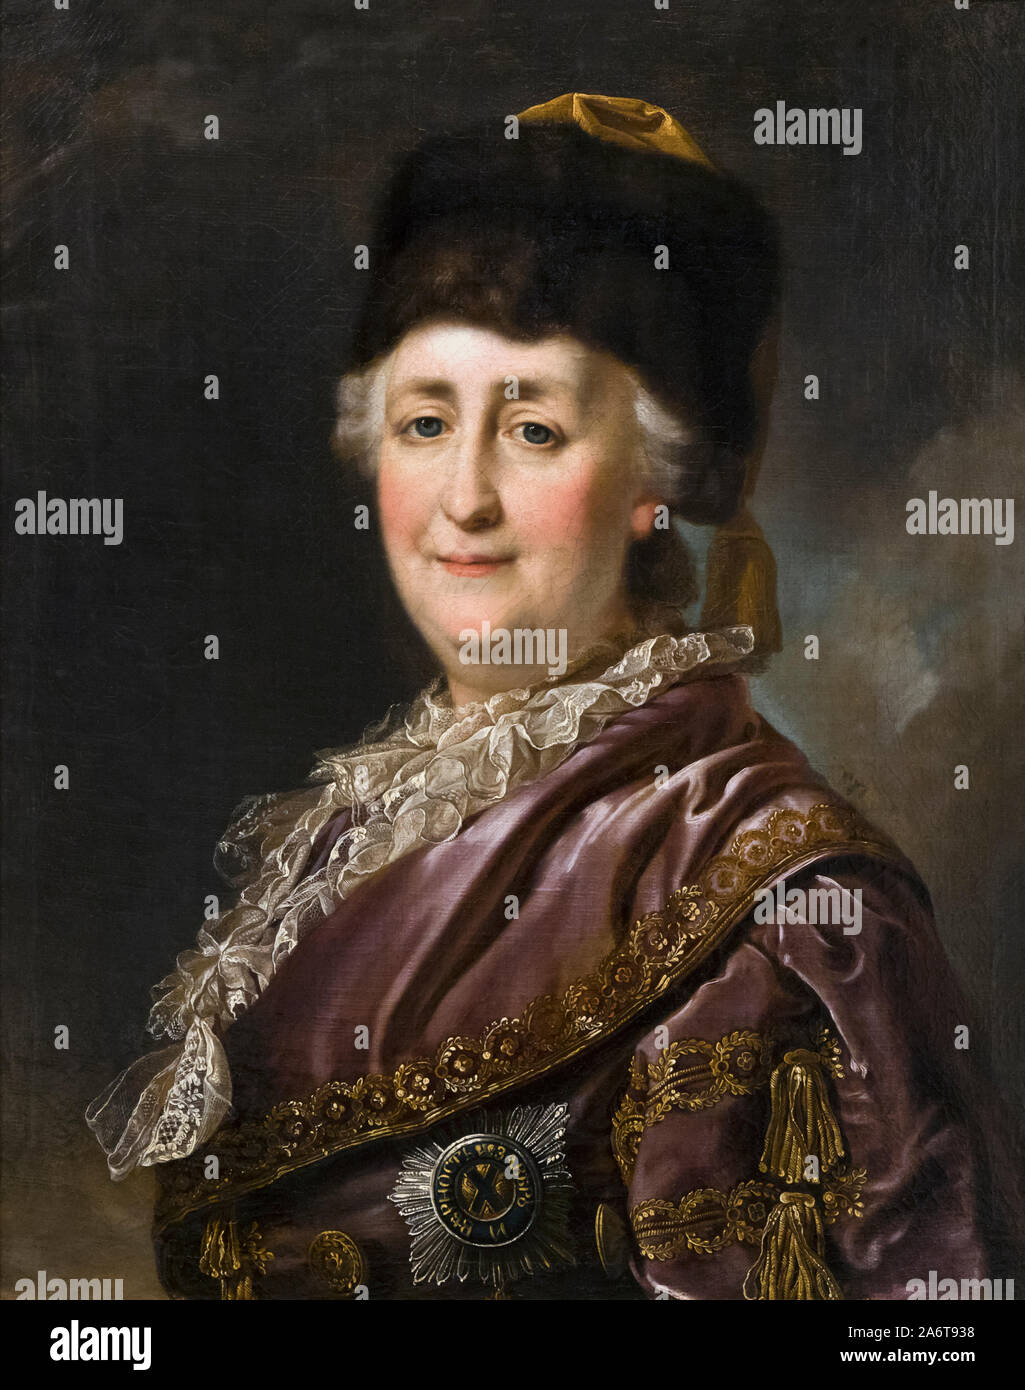 Portrait von Katharina die Große im Reisen Kleid, von einem unbekannten Künstler. Katharina II., Katharina die Große, 1729 - 1796. Deutsche geboren Kaiserin von Ru Stockfoto